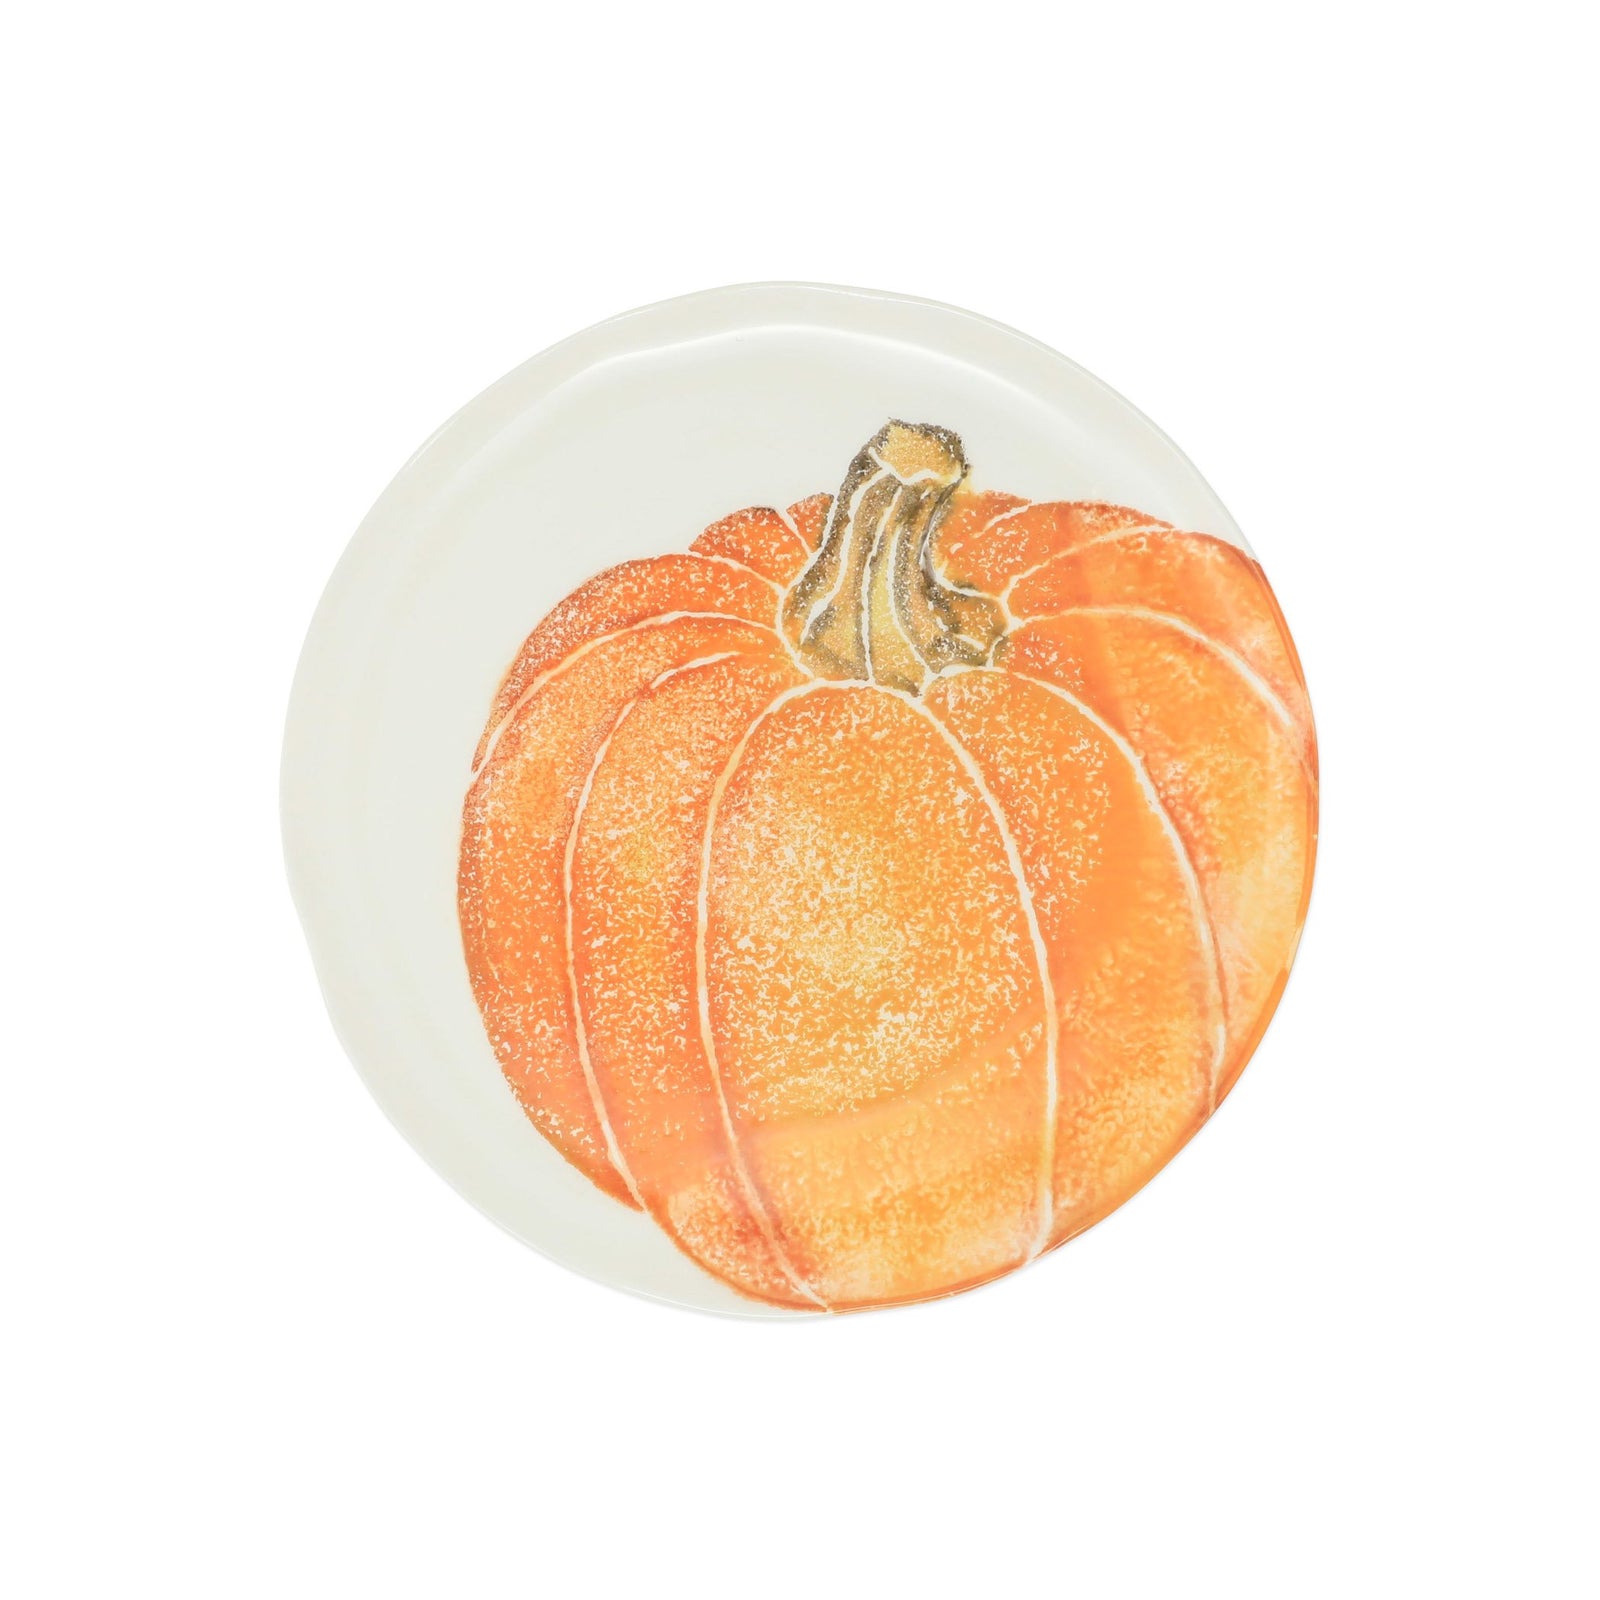 VIETRI: Pumpkins Salad Plate - Orange Medium Pumpkin - Artistica.com